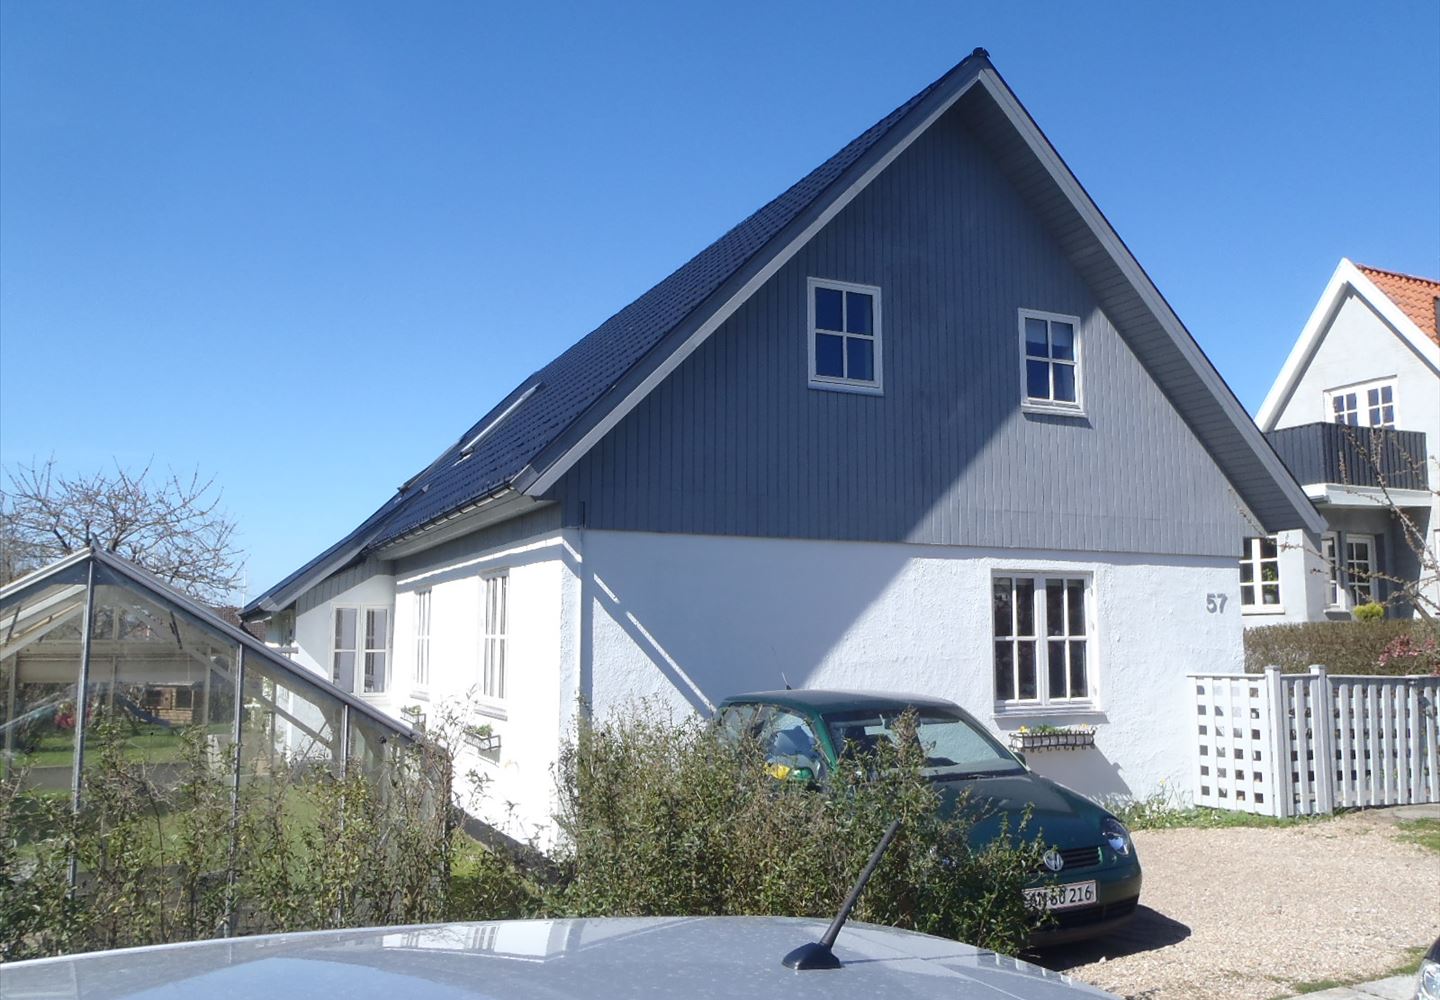 Ilbjerg Alle 57, 2860 Søborg